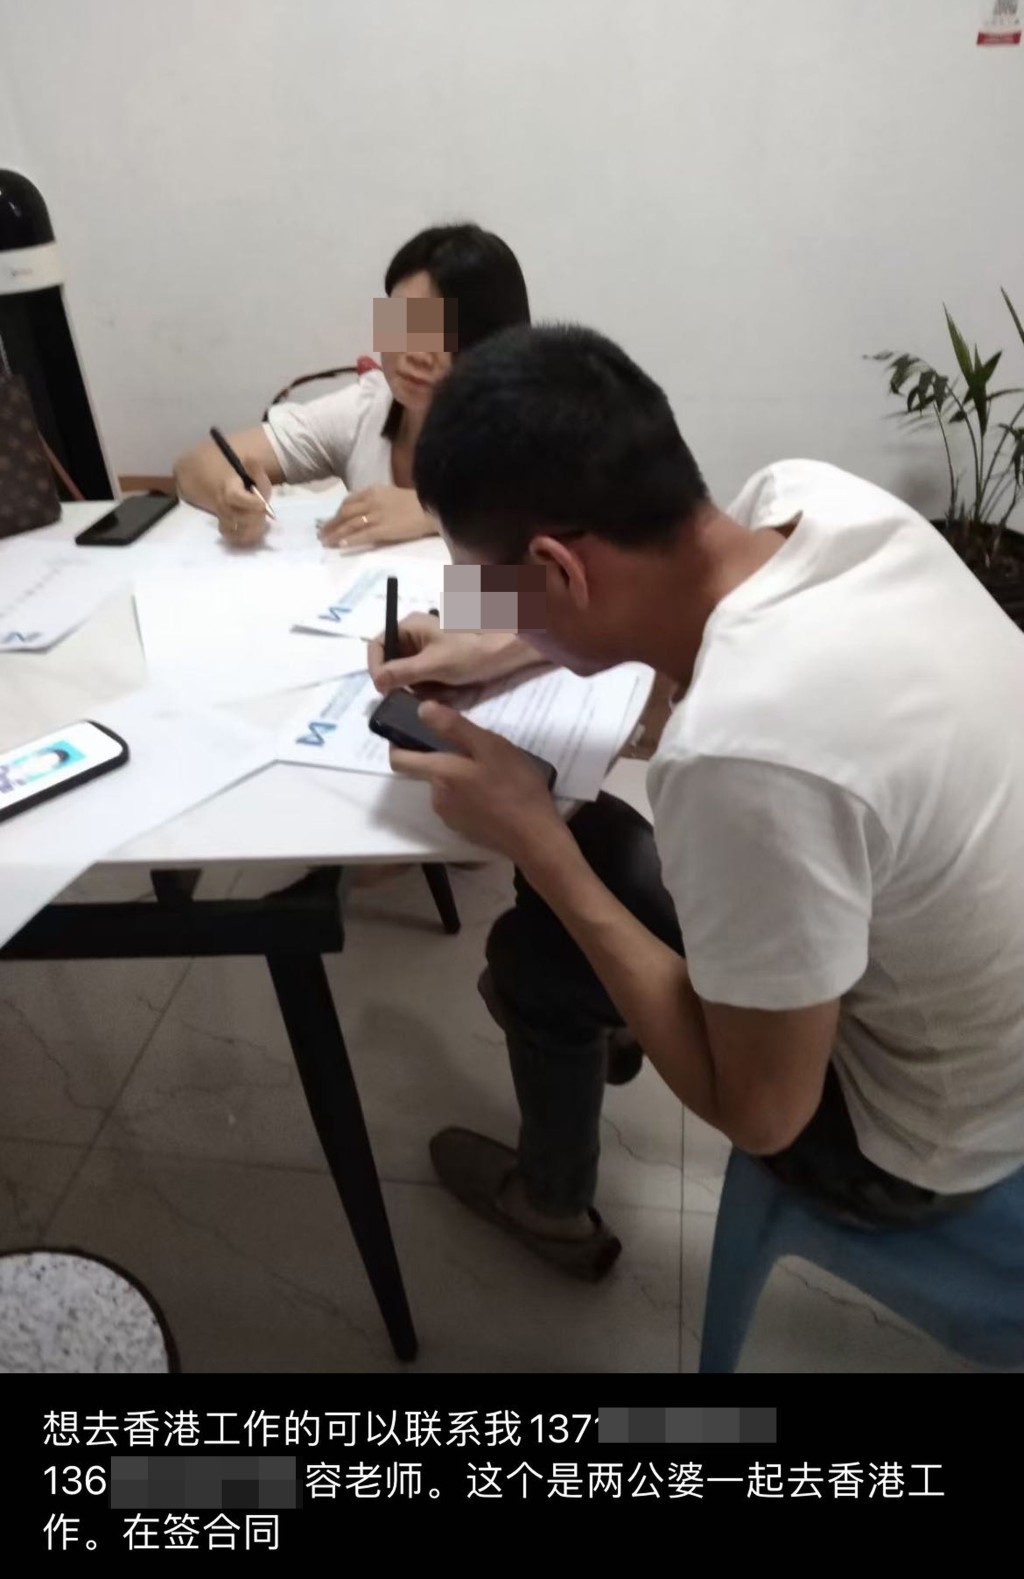 内地中介发放一张内地夫妇签合同的相片，称他们准备前往香港工作。